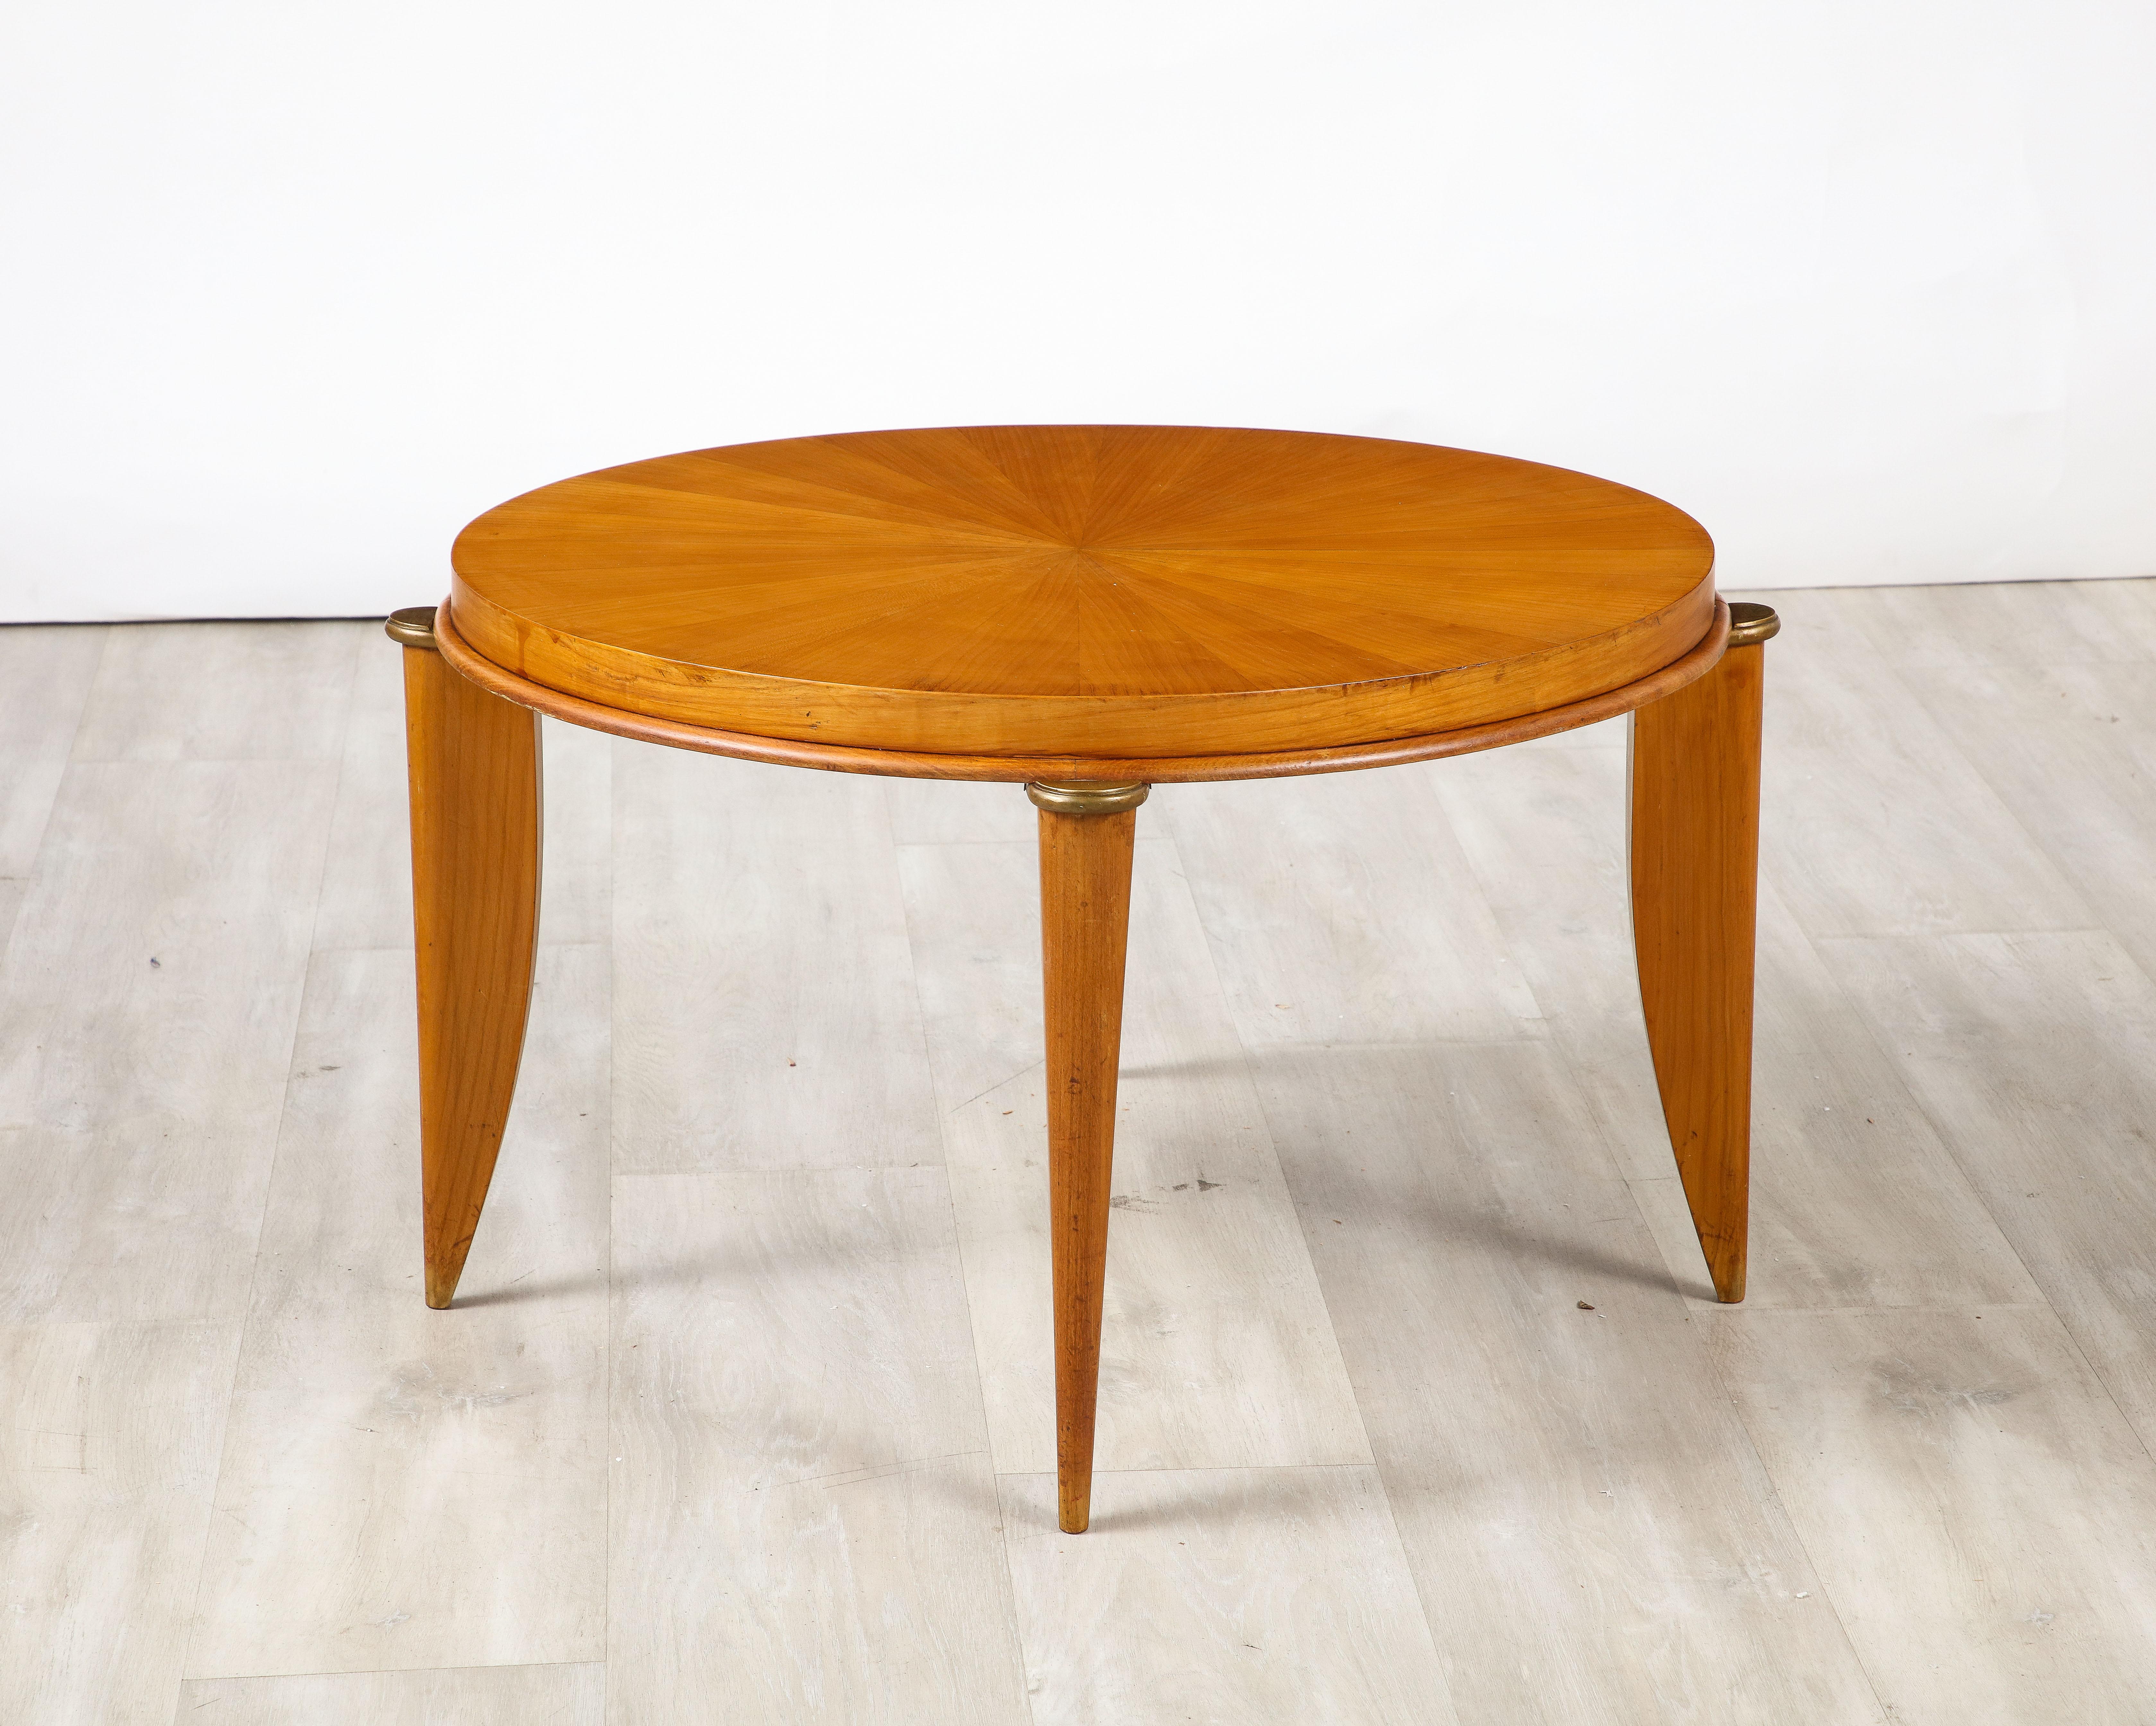 Ein eleganter französischer Beistelltisch oder Cocktailtisch im Art déco-Stil, entworfen von Maurice Jallot ( 1900 -1971 ), um 1940. Der Tisch ist aus Bergahorn gefertigt und von sehr solider Konstruktion. Die runde Platte wird von sehr stilvollen,